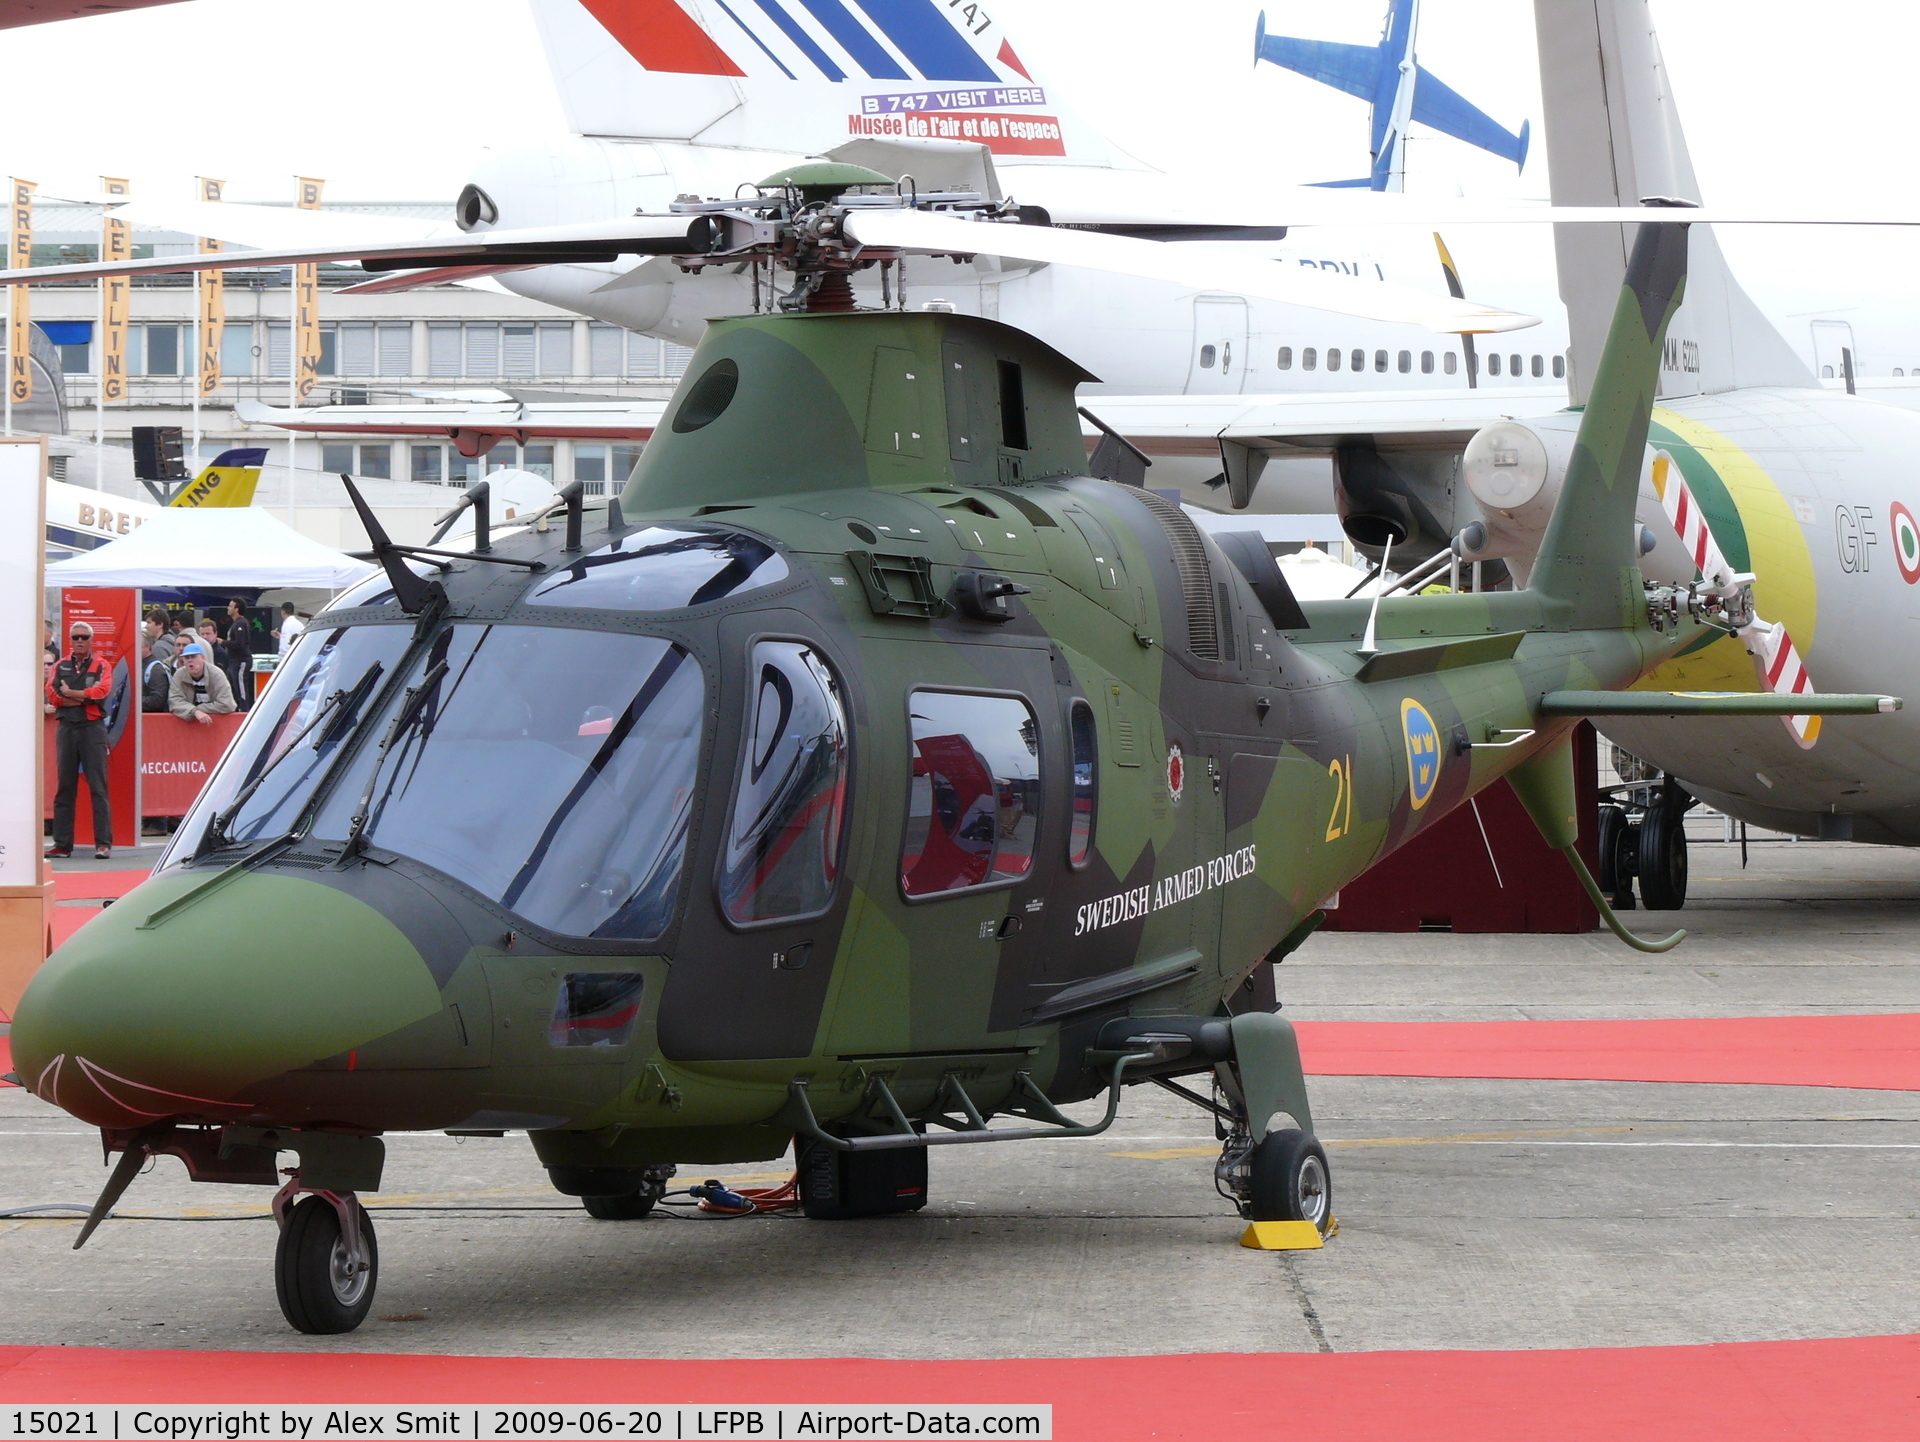 15021, Agusta Hkp15 (A-109E LUH) C/N 13751, Agusta A109LUH 15021/21 Swedish Armed Forces